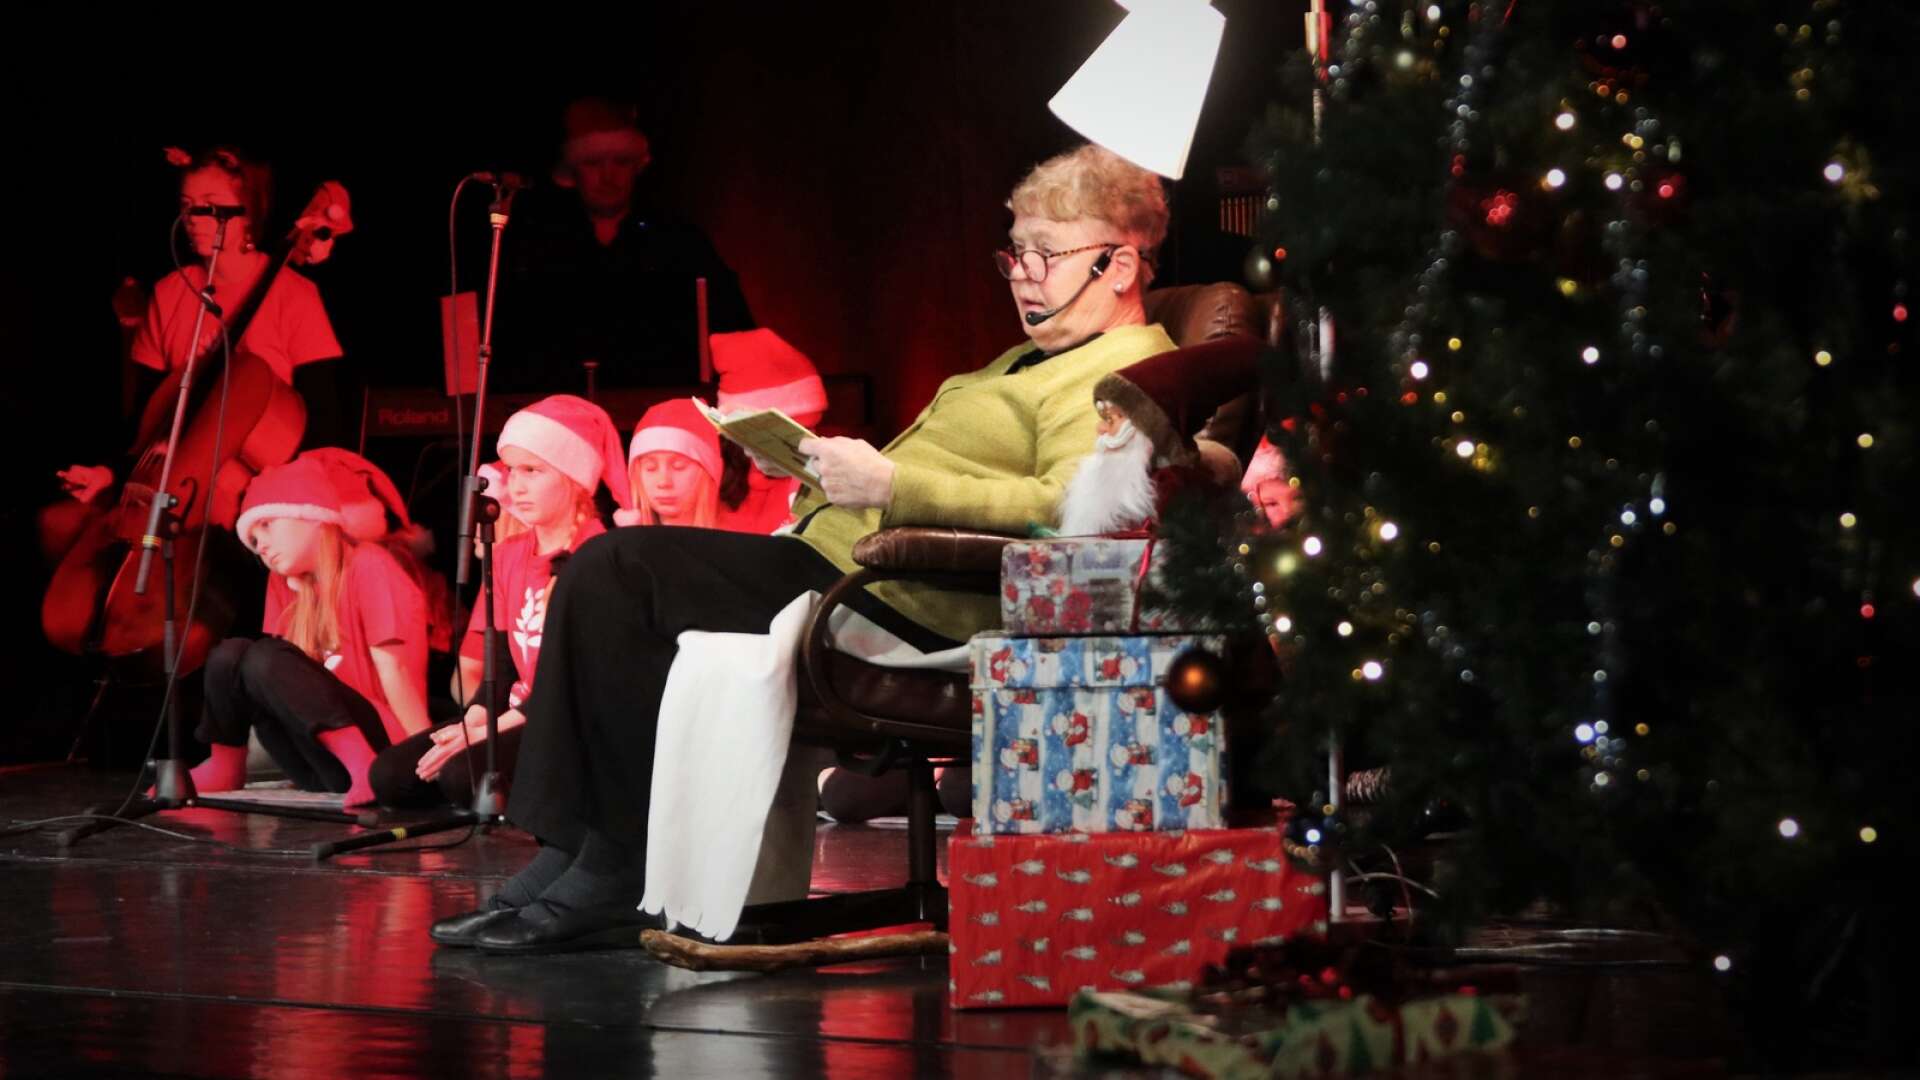 Tidigare läraren Anne Bengtsson, som flera gånger sett julsagan från läktarplats, fick det ärofyllda uppdraget att läsa årets julsaga, ”Jul i Bullerbyn”. 